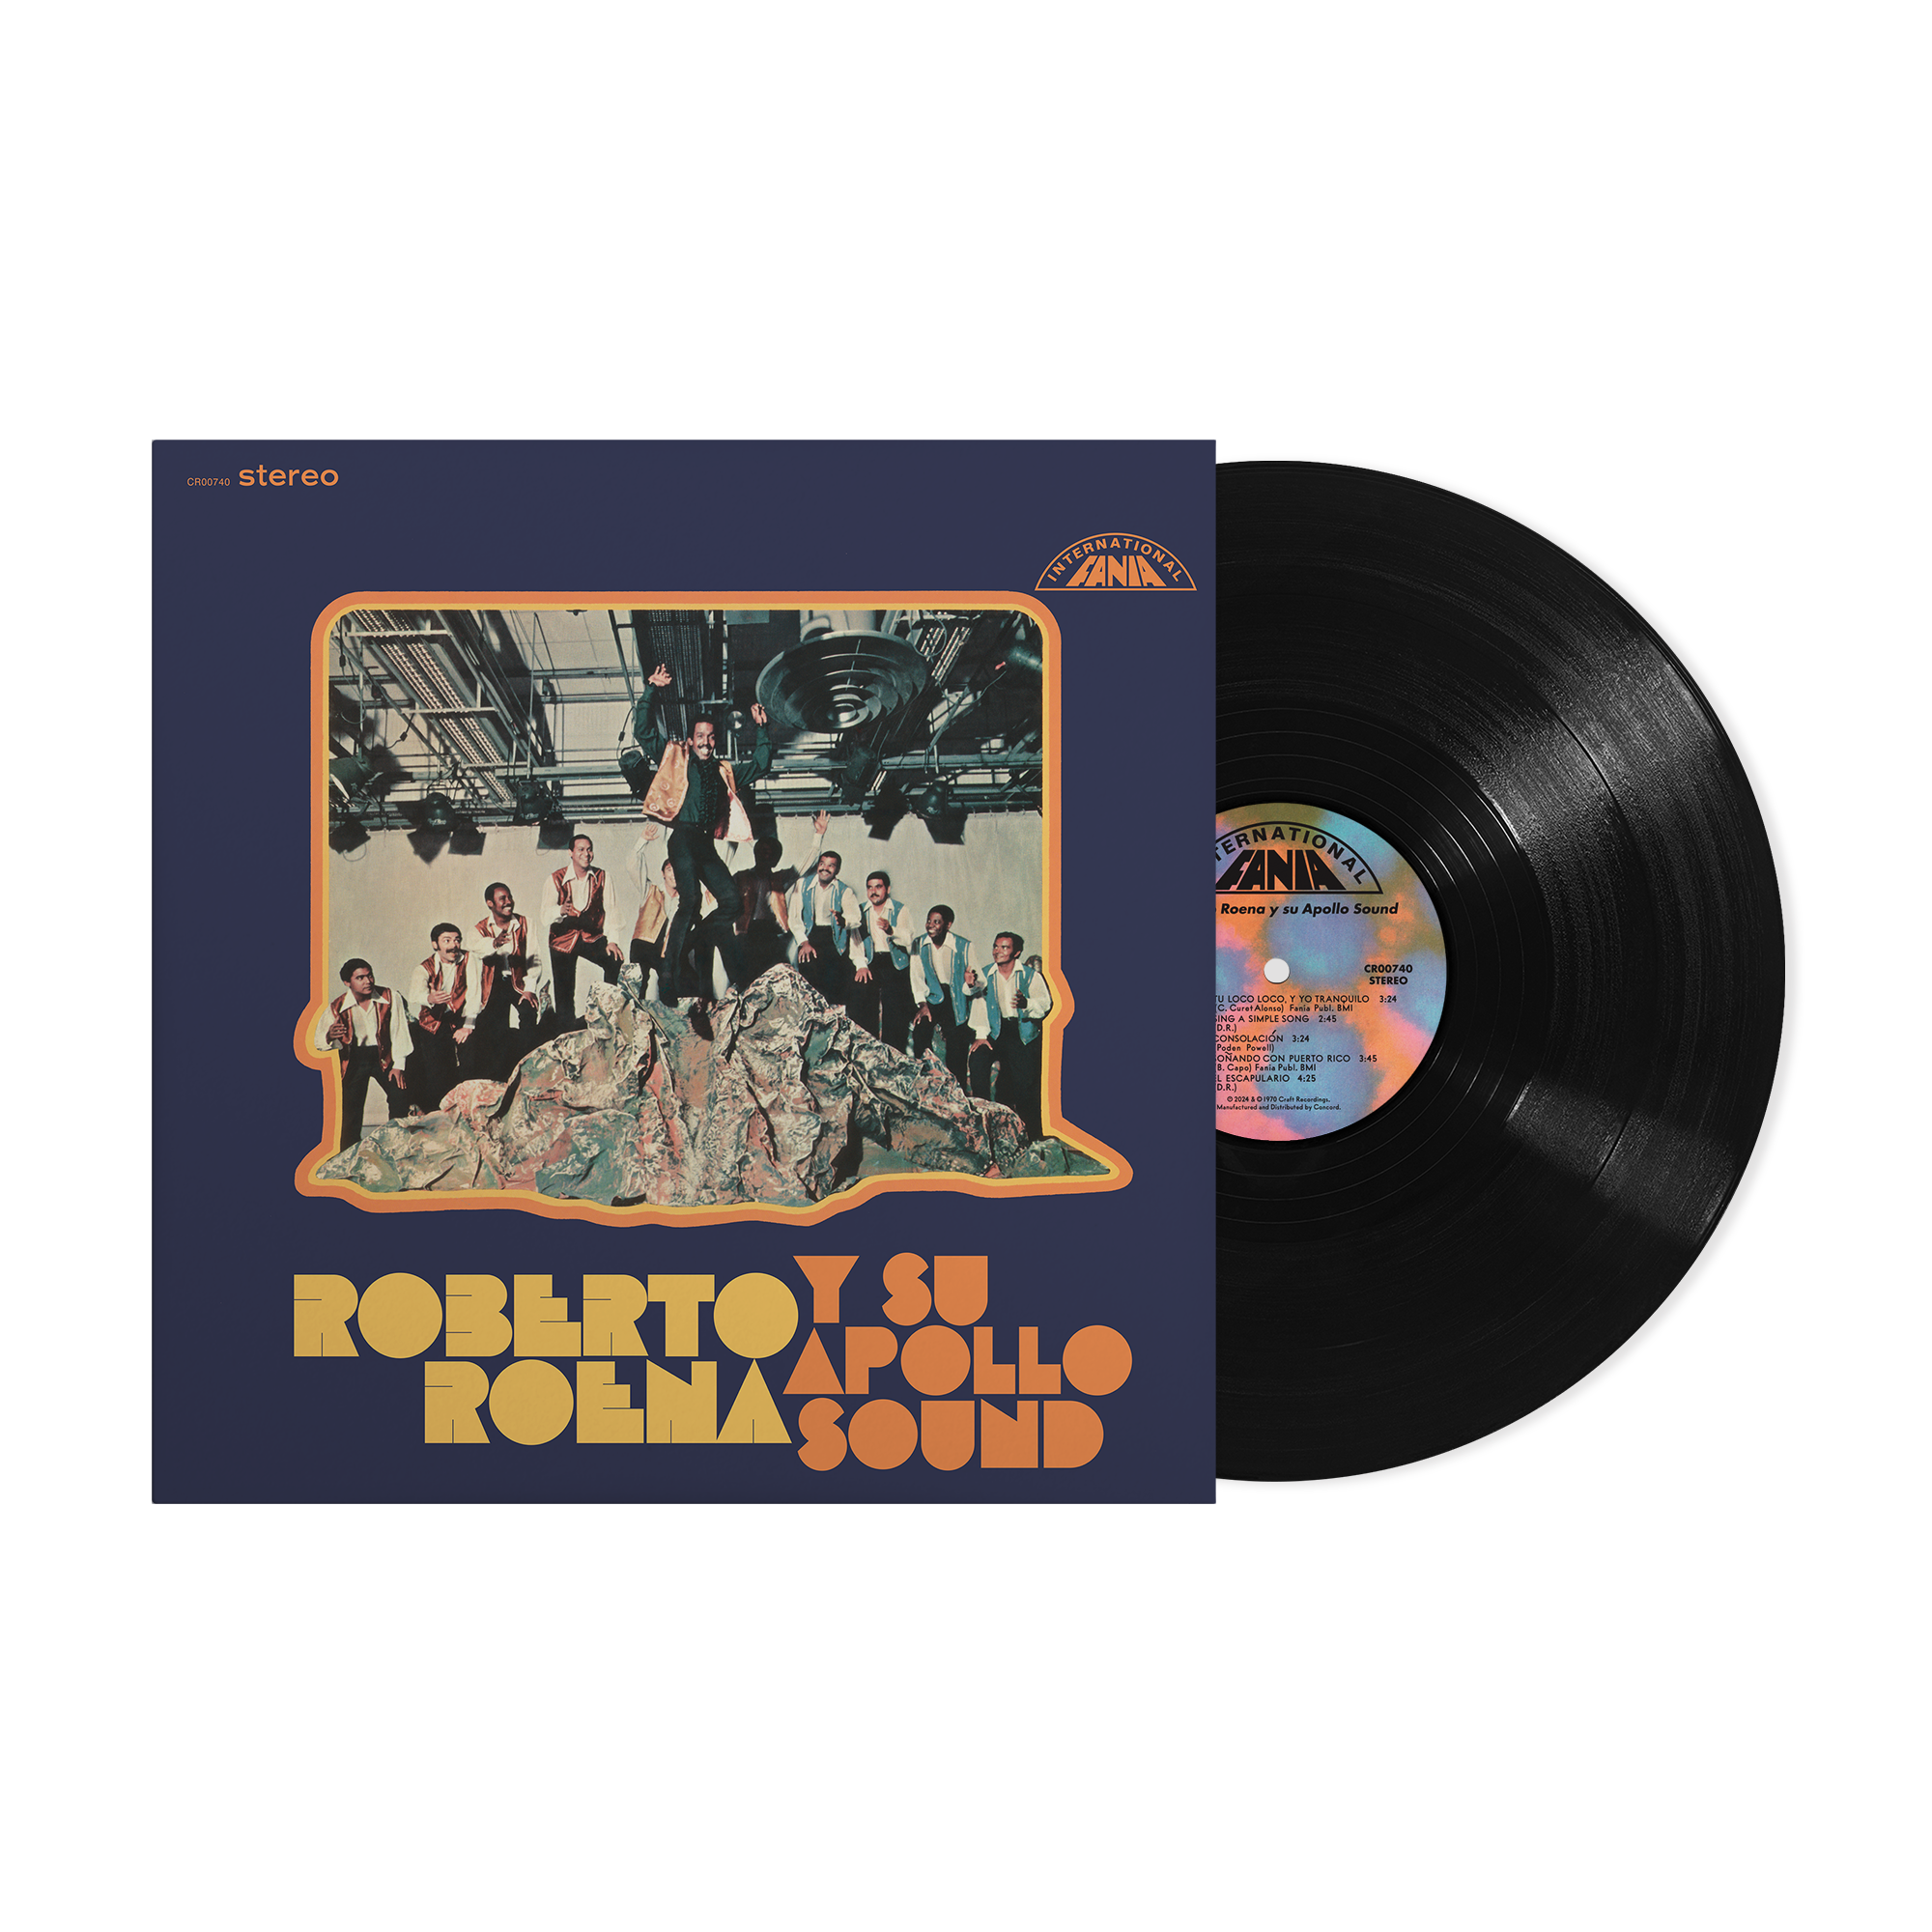 Roberto Roena Y Su Apollo Sound - Roberto Roena y su Apollo Sound Vinyl LP